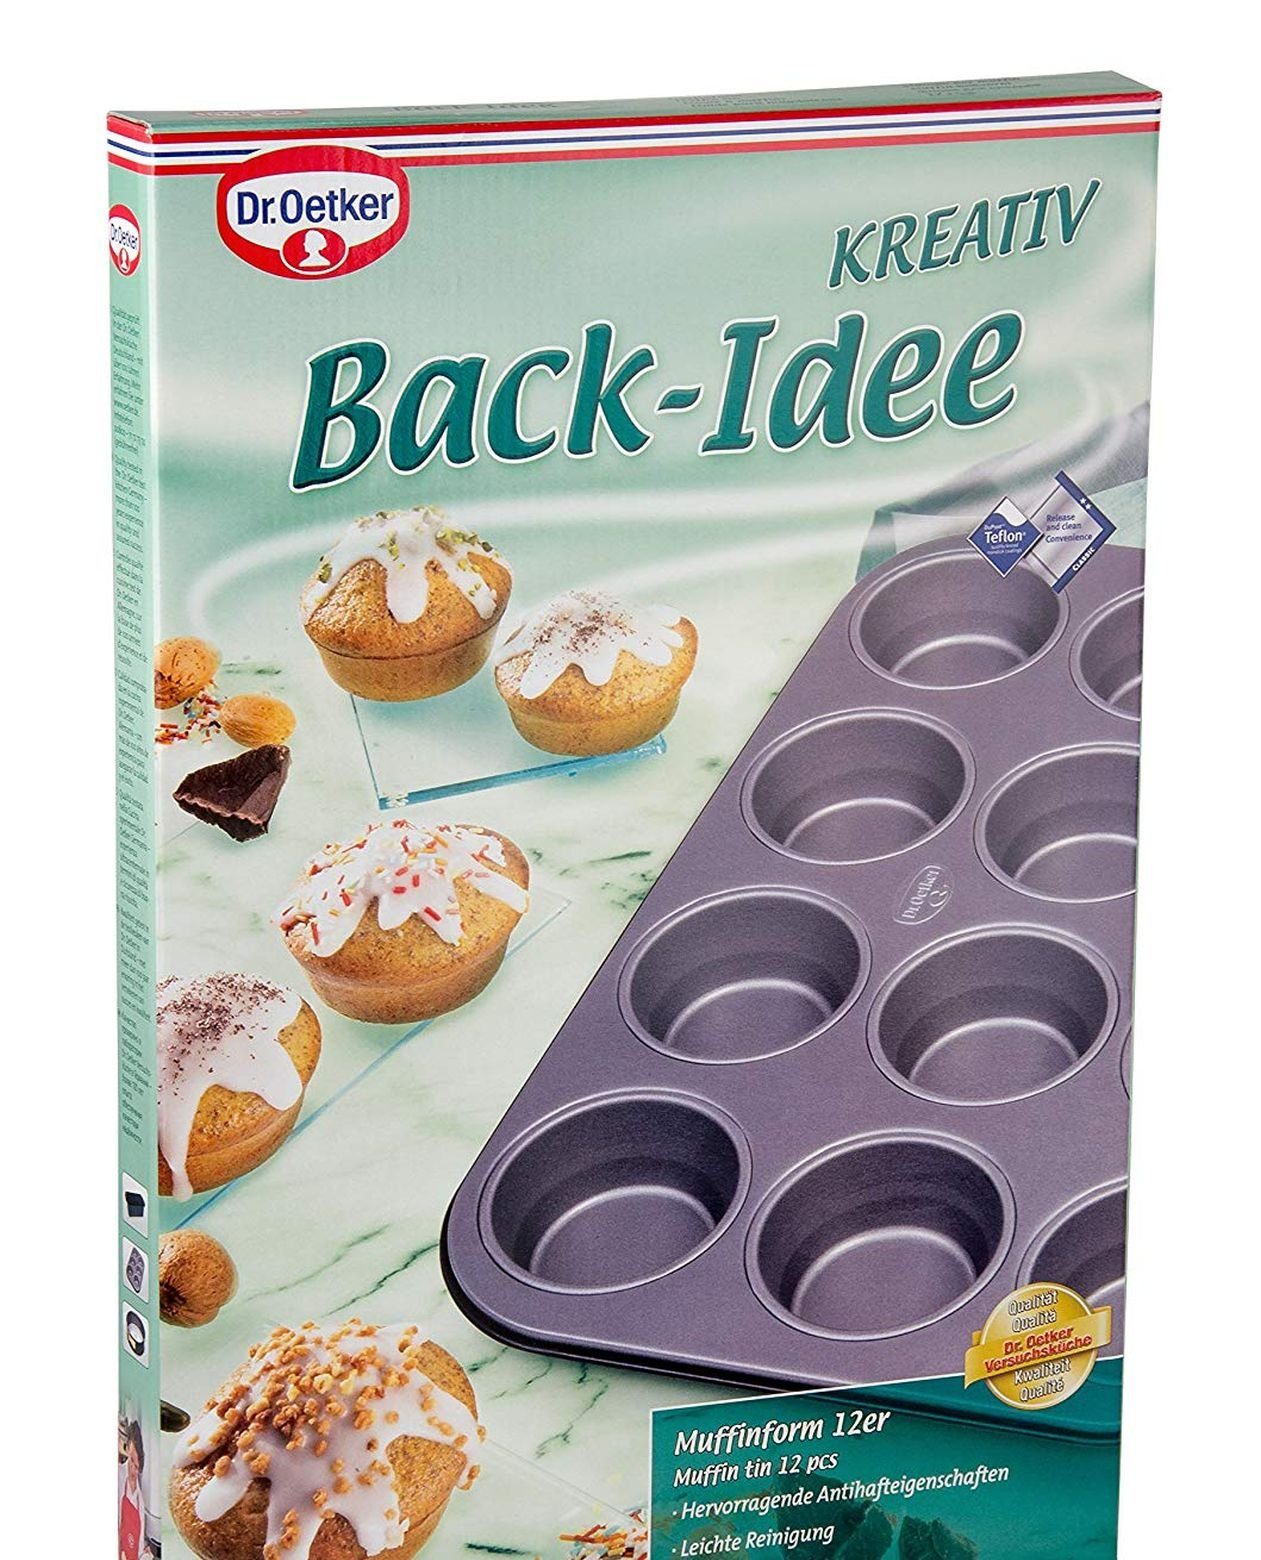 Dr. Oetker Muffinform Muffin- Blech - Kreativ Oetker Dr. Back- (1229) 12er Back-Idee Form